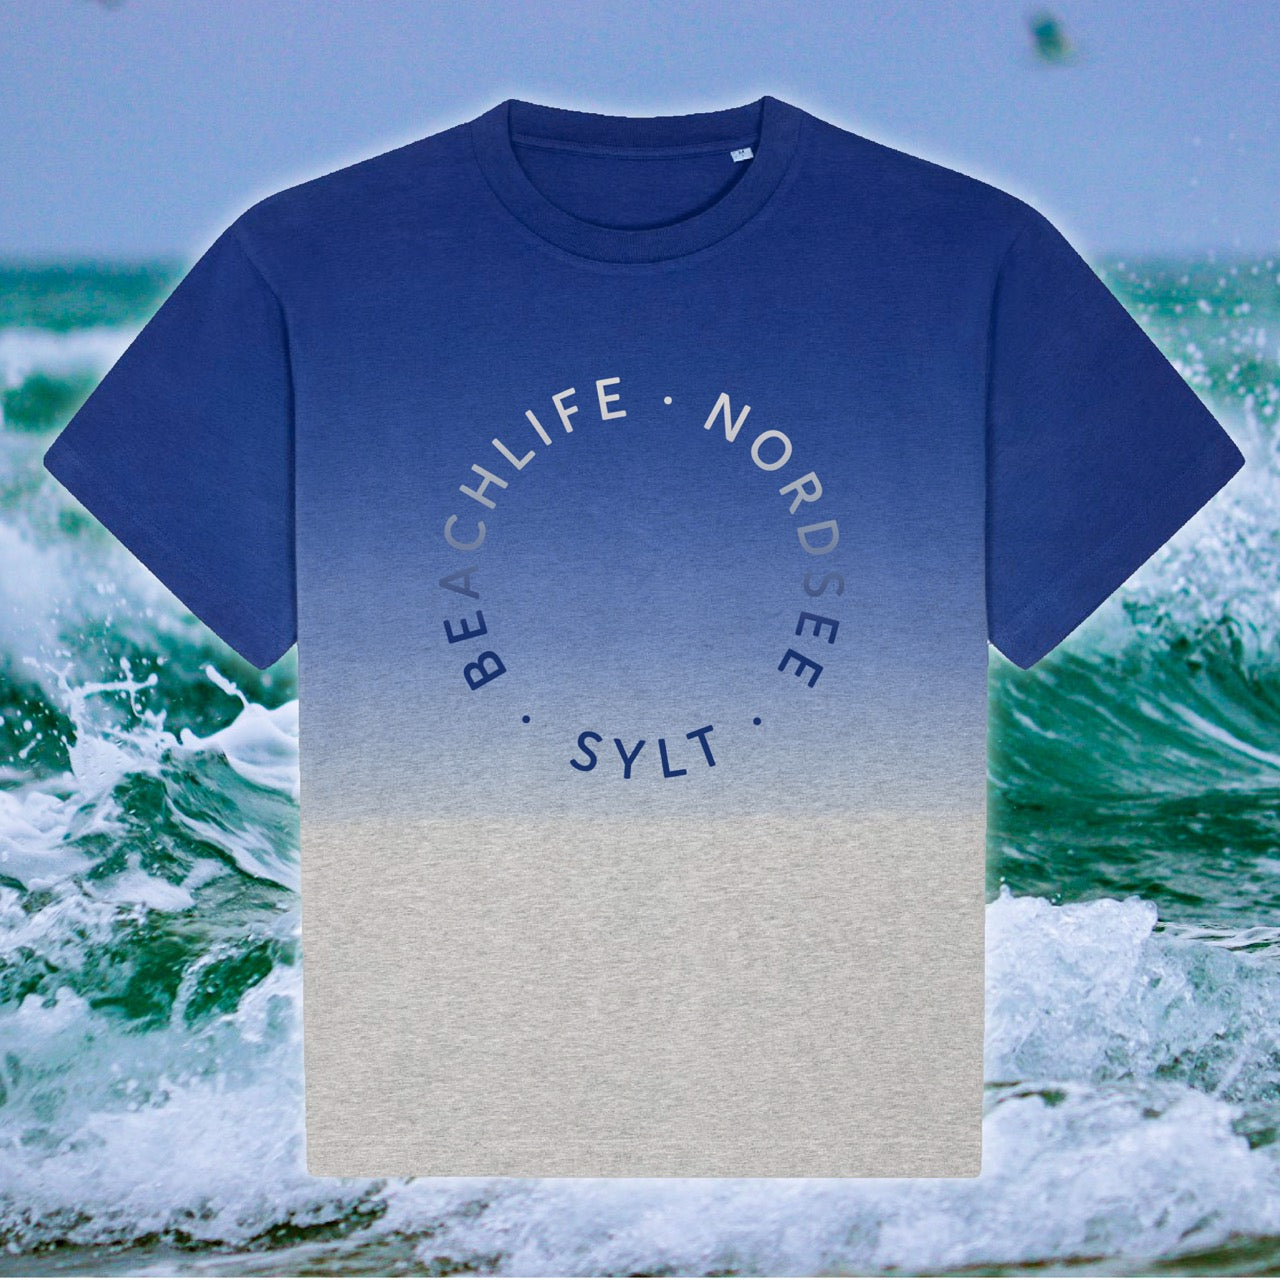 T-Shirt mit Farbverlauf und Sylt-Aufdruck. Das Shirt ist am Rundhalsausschnitt in einem blau-hellgrau gefärbt und läuft in ein beige aus. In der gleichen, aber umgekehrten Farbe steht in rund der Schriftzug Beachlife, Nordsee, Sylt. Im Hintergrund sieht man einen Detailausschnitt der Nordsee-Wellen.